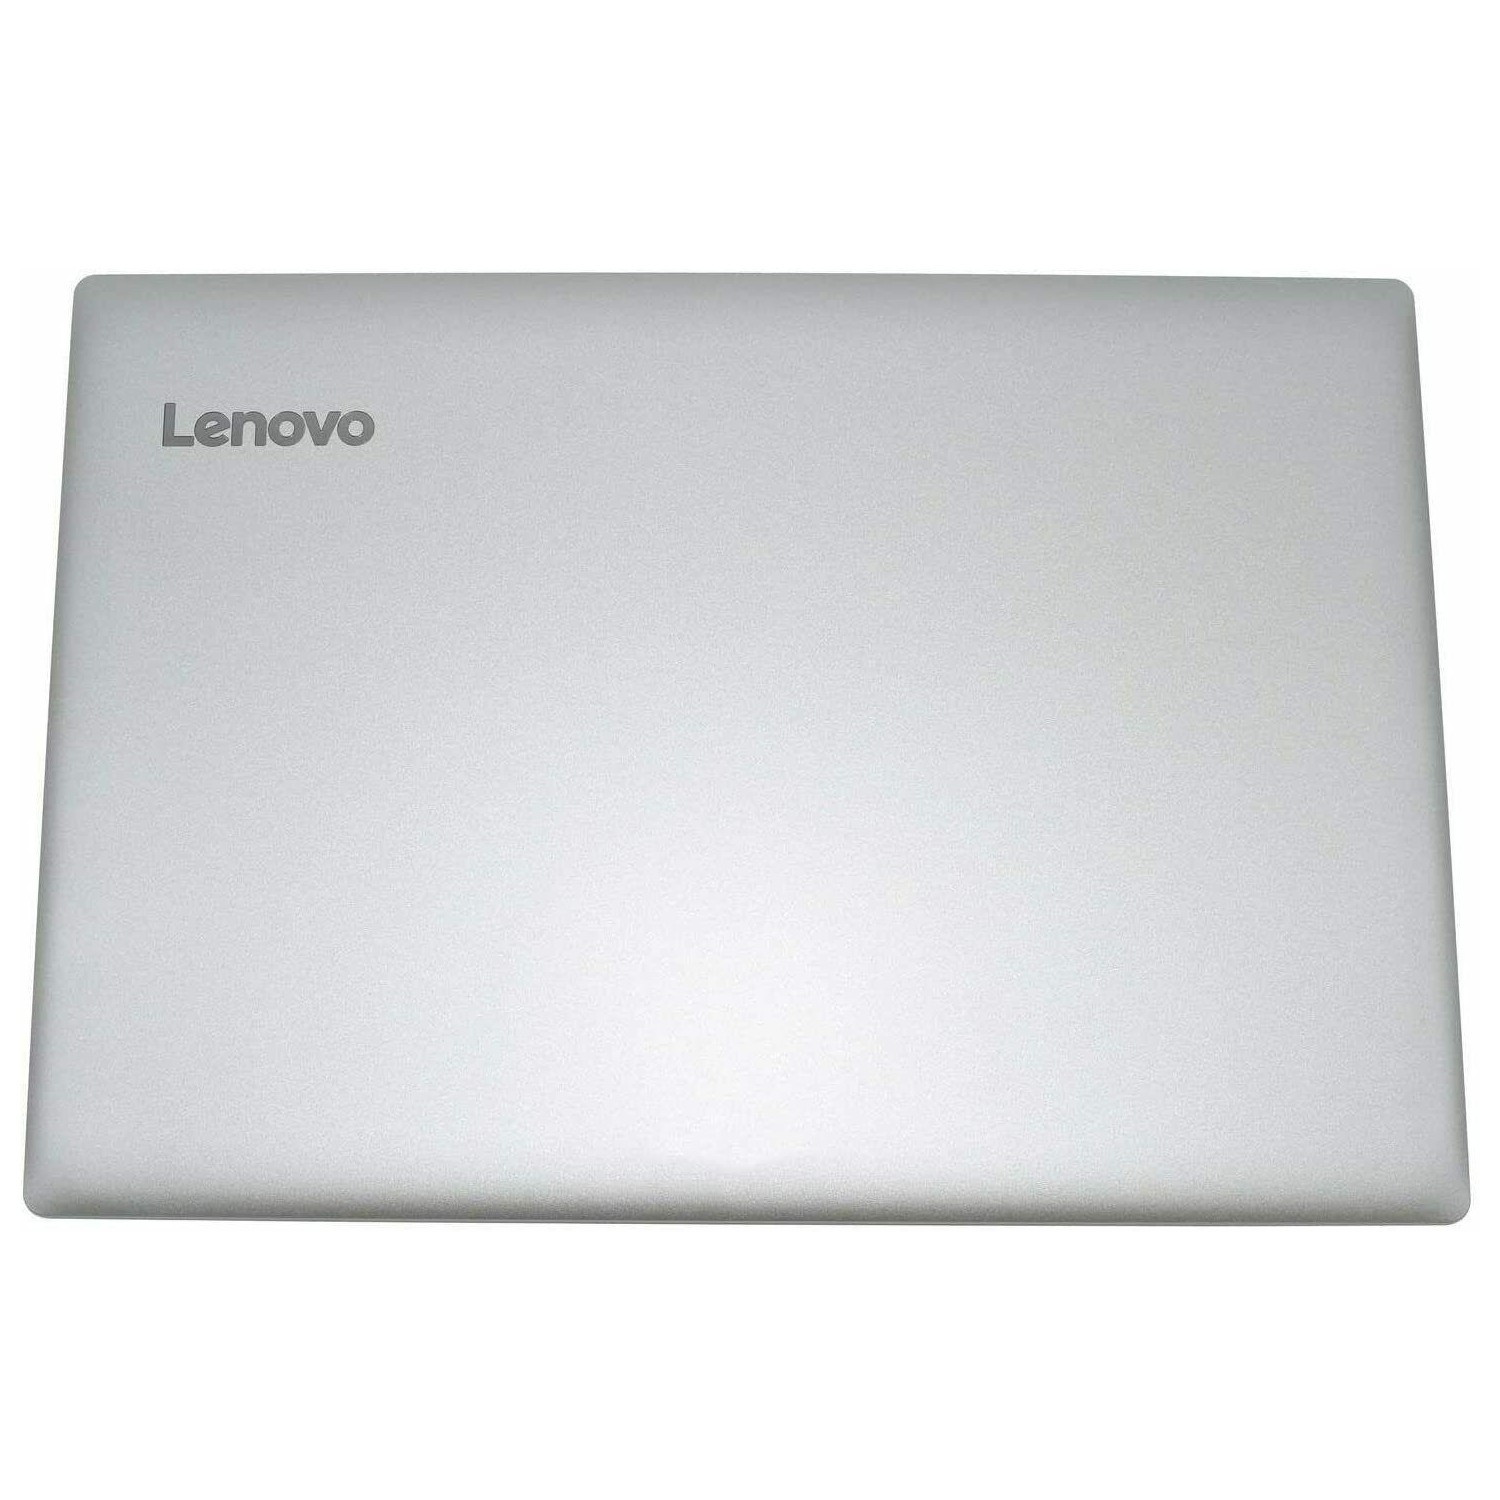 Carcasa LCD portátil Lenovo IdeaPad 330-15ICH